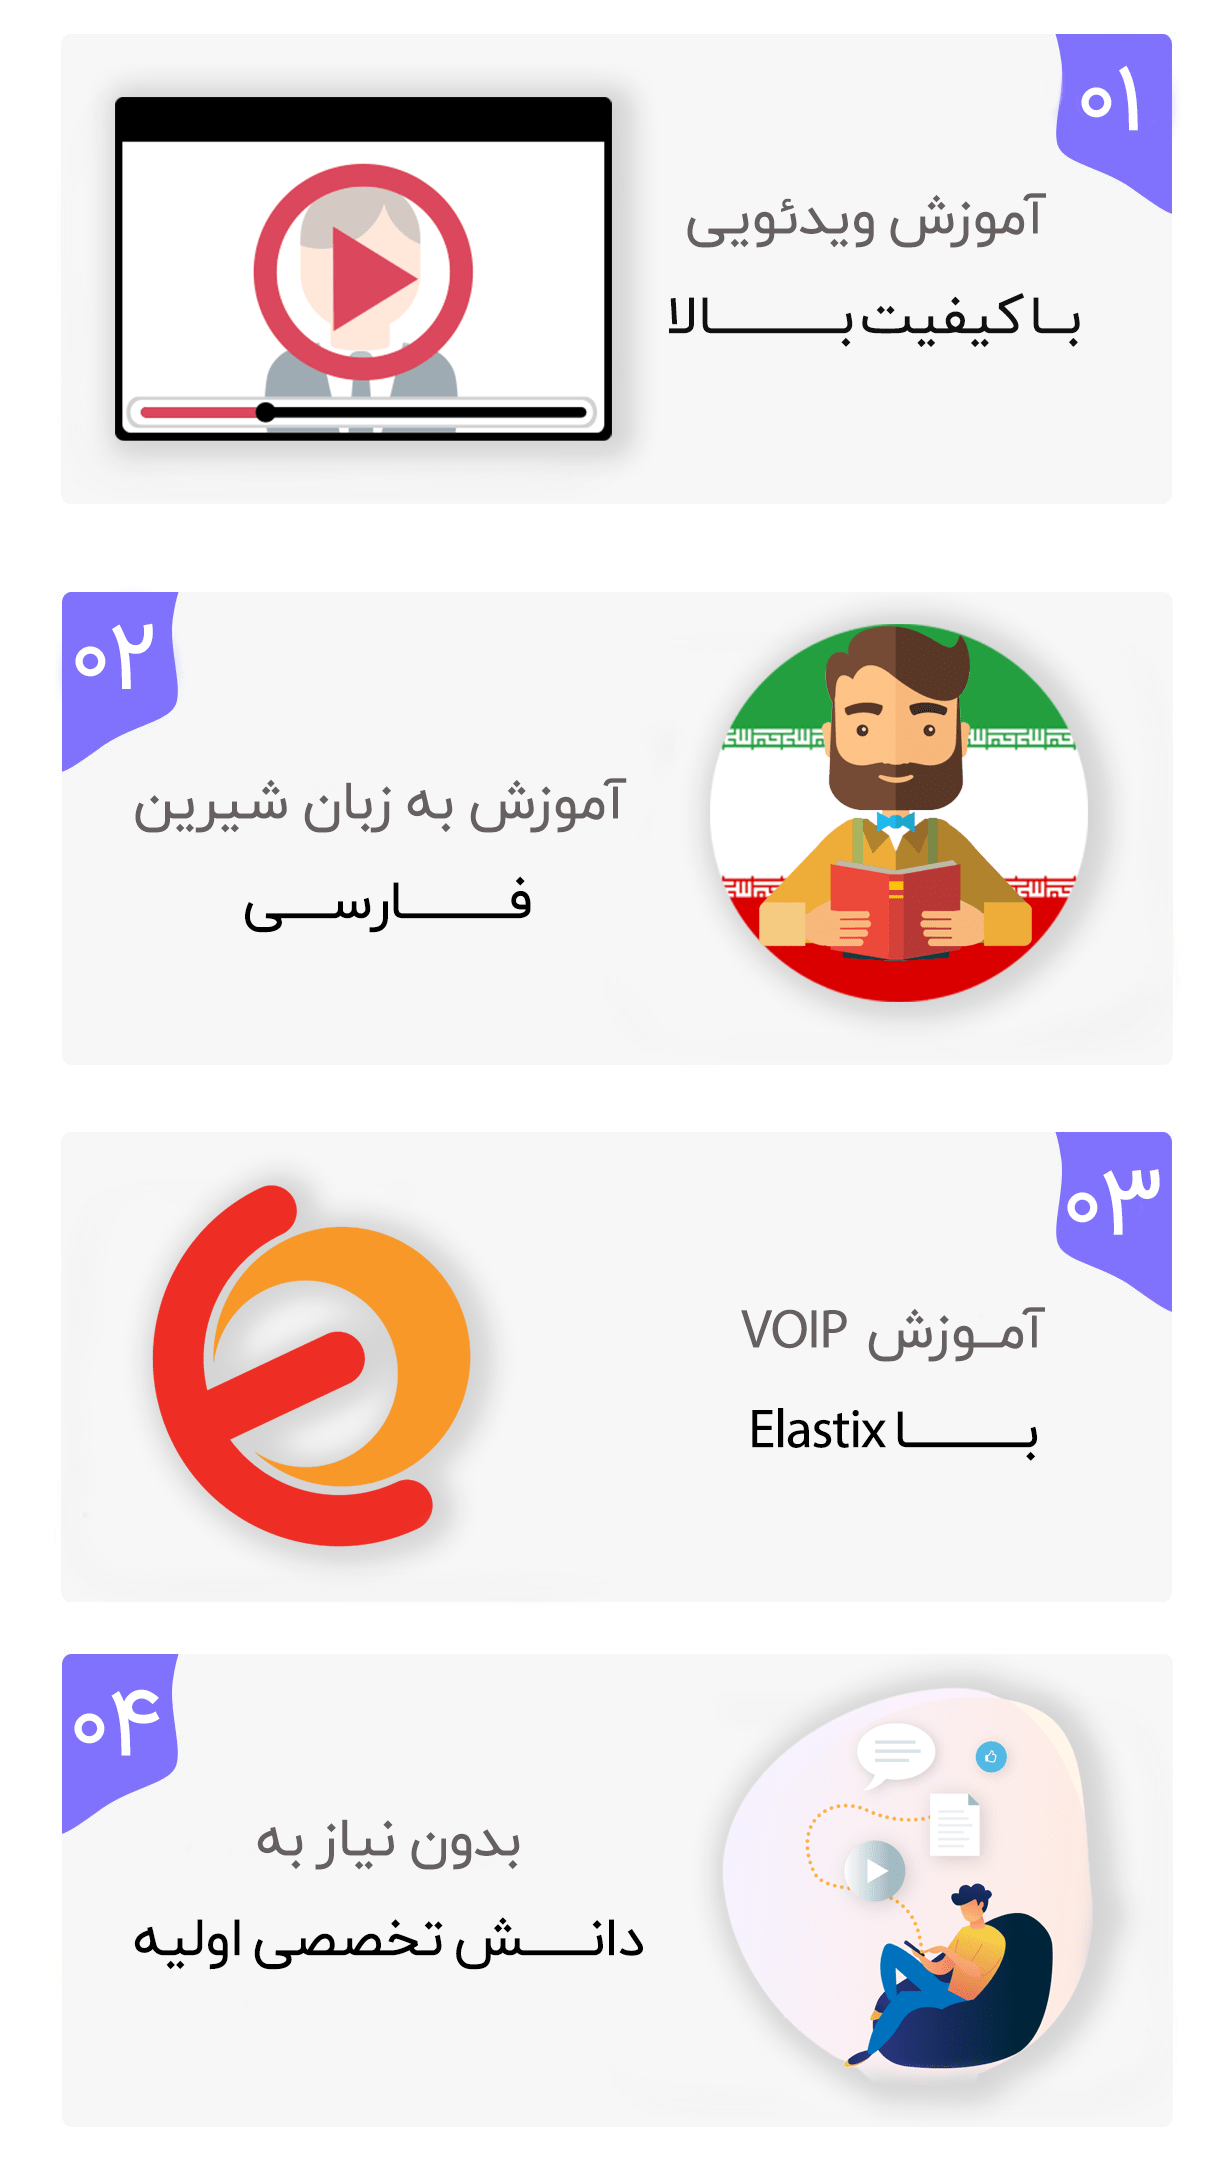 آموزش صفر تا صد VOIP به زبان فارسی